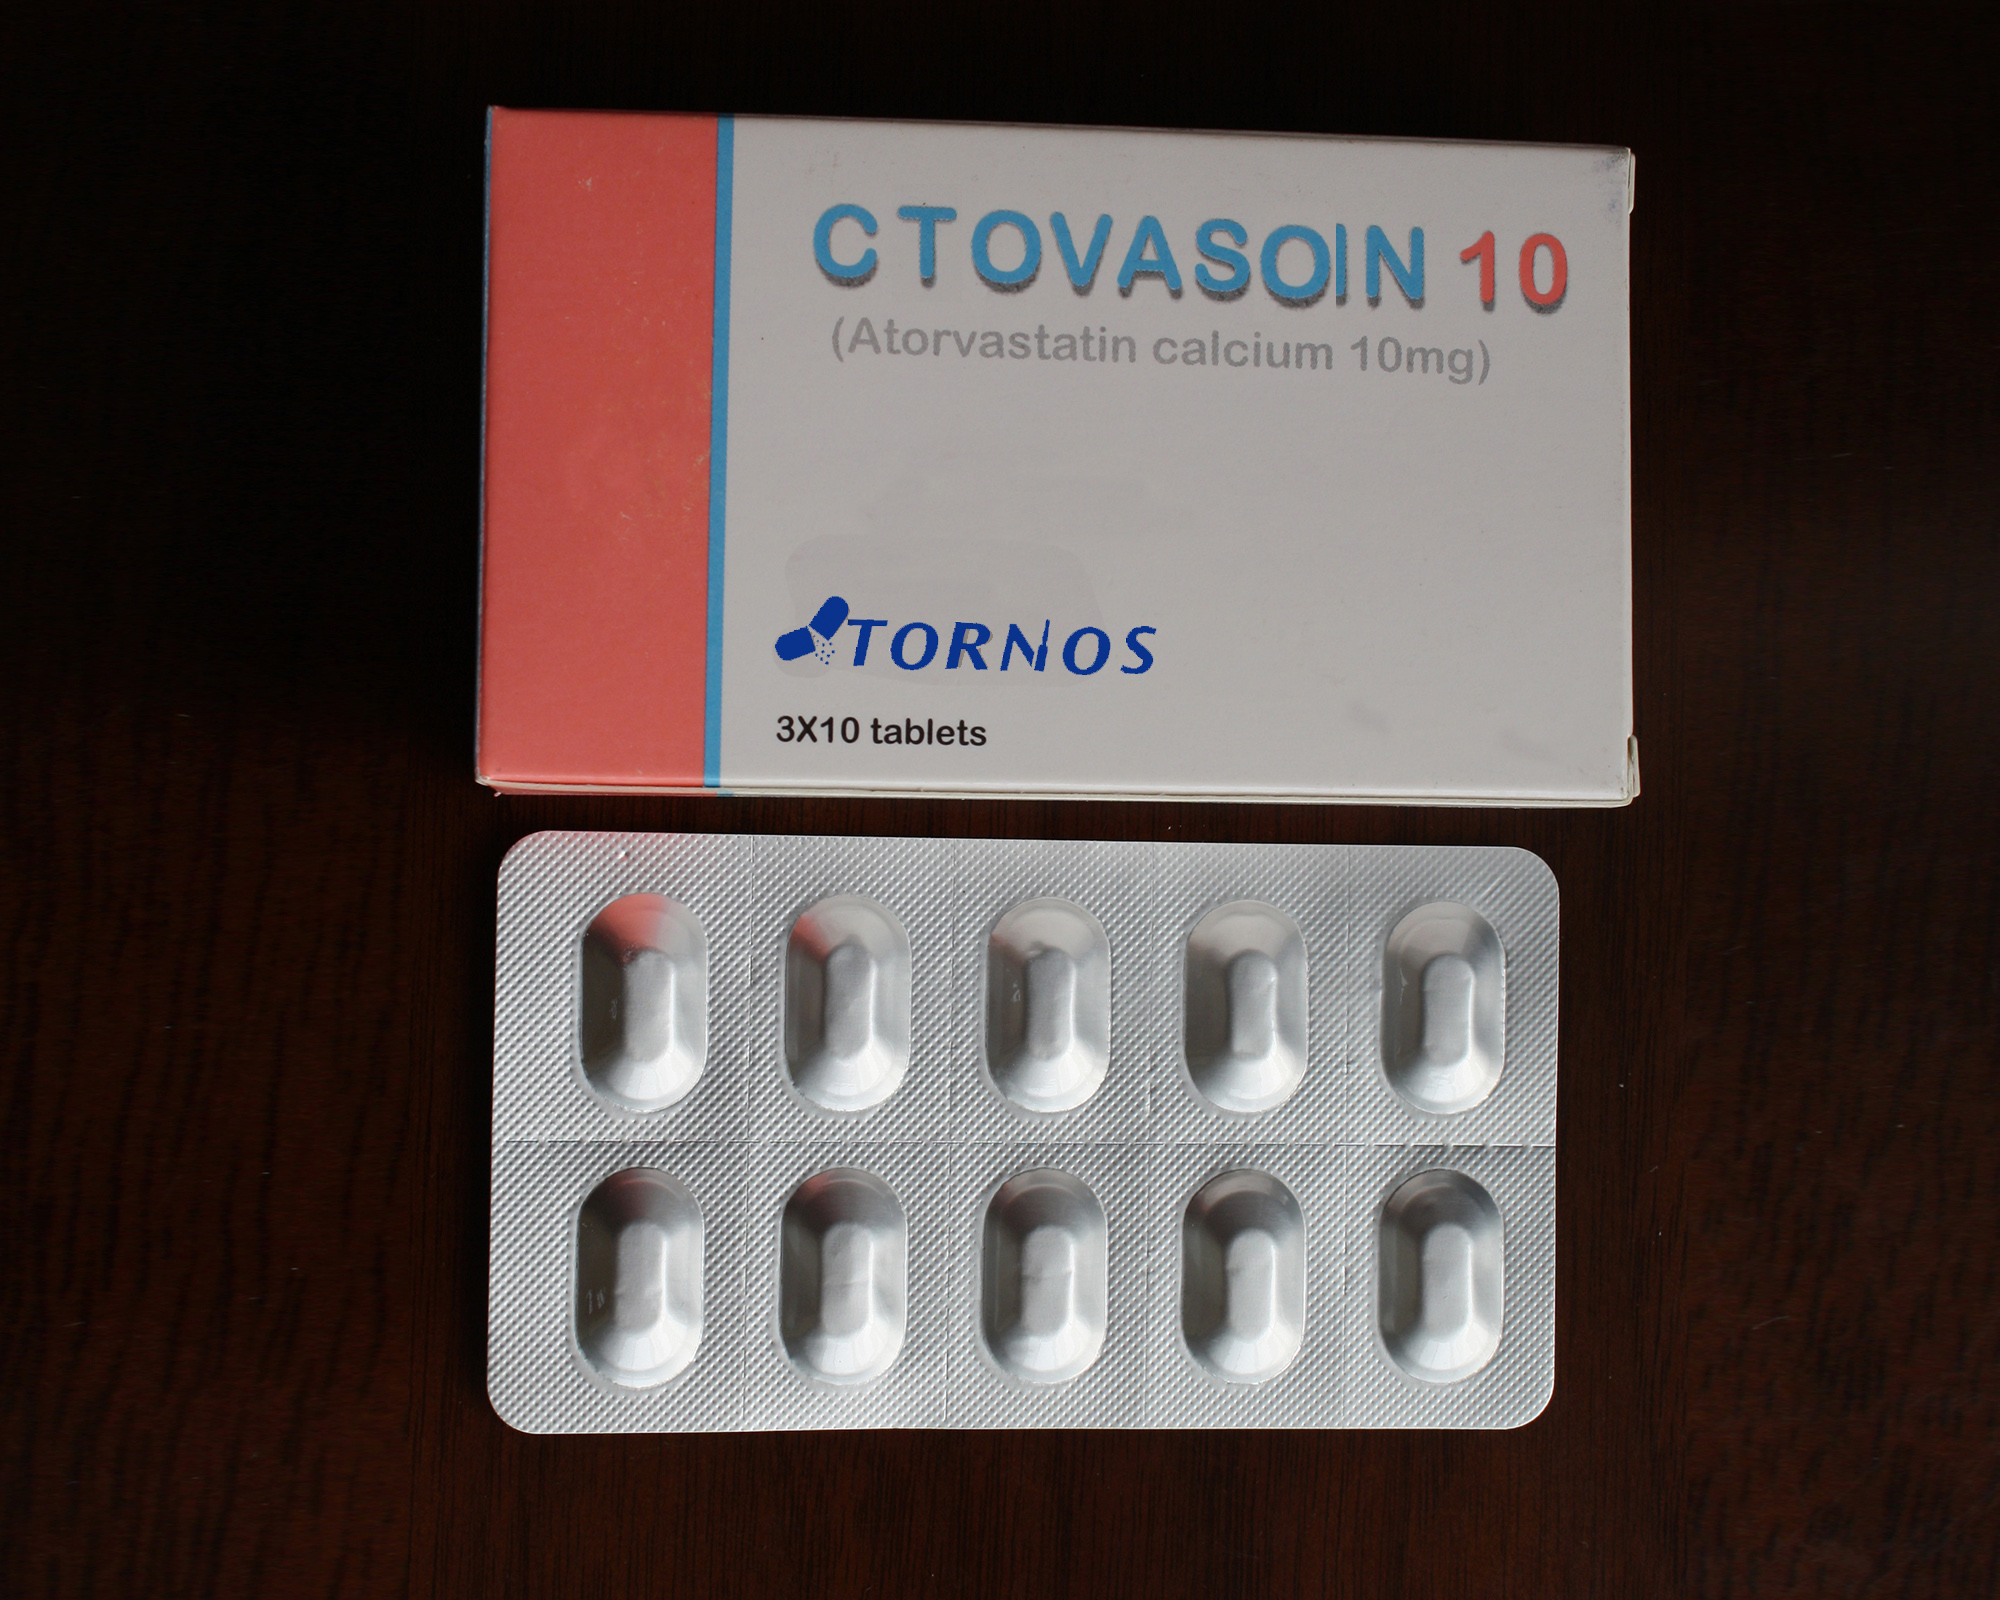 atorvastatin calcium tablet